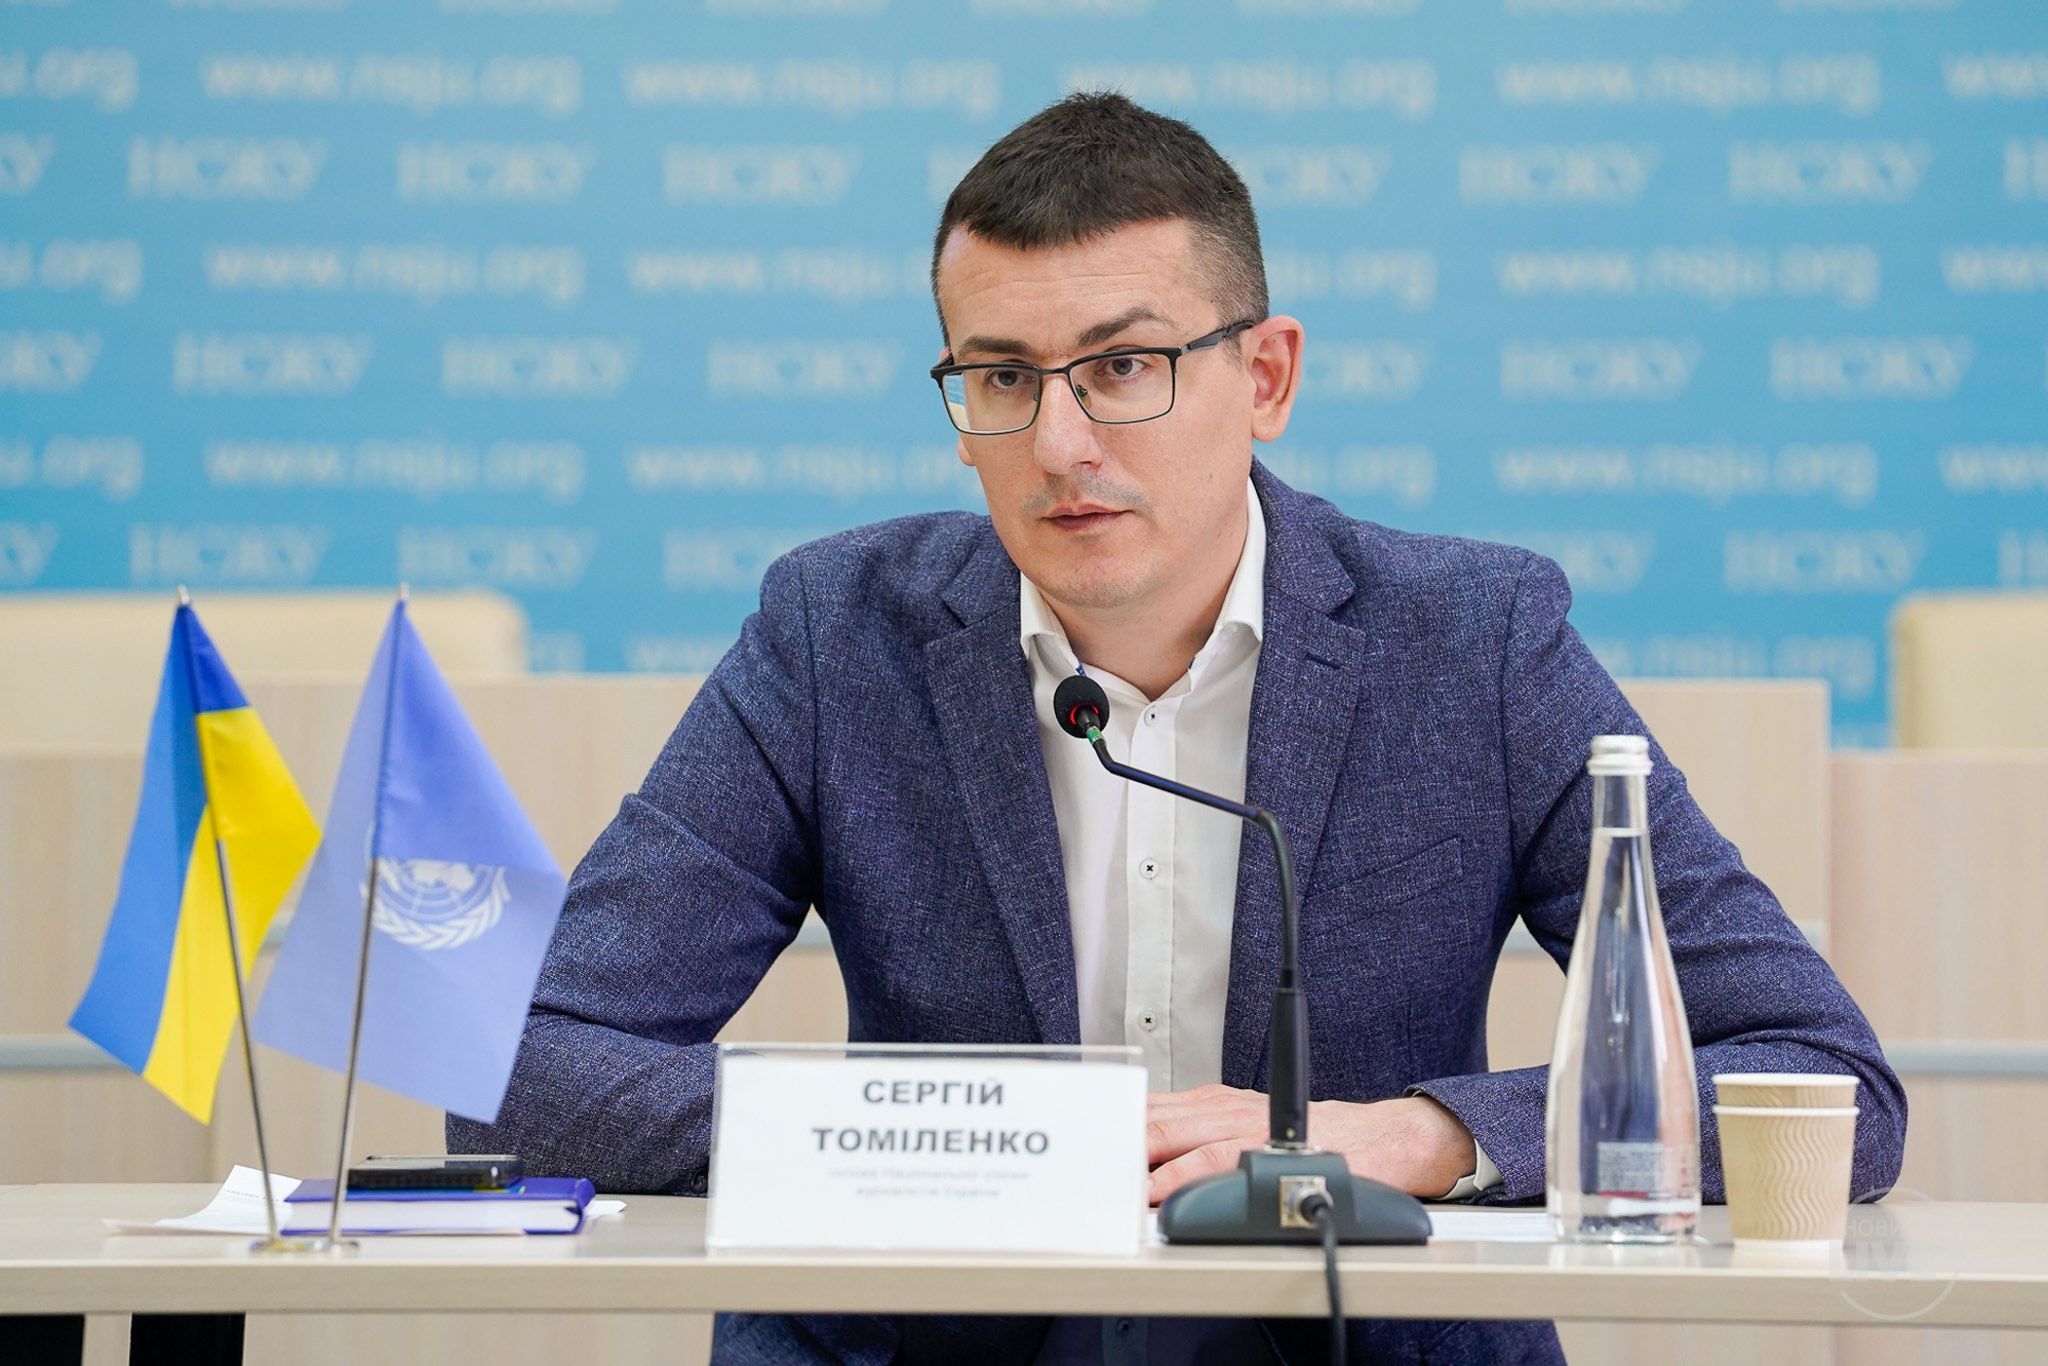 Сергій Томіленко: Треба обов’язково використовувати всі ті можливості, що з’явилися завдяки глобальній міжнародній солідарності на підтримку українських ЗМІ